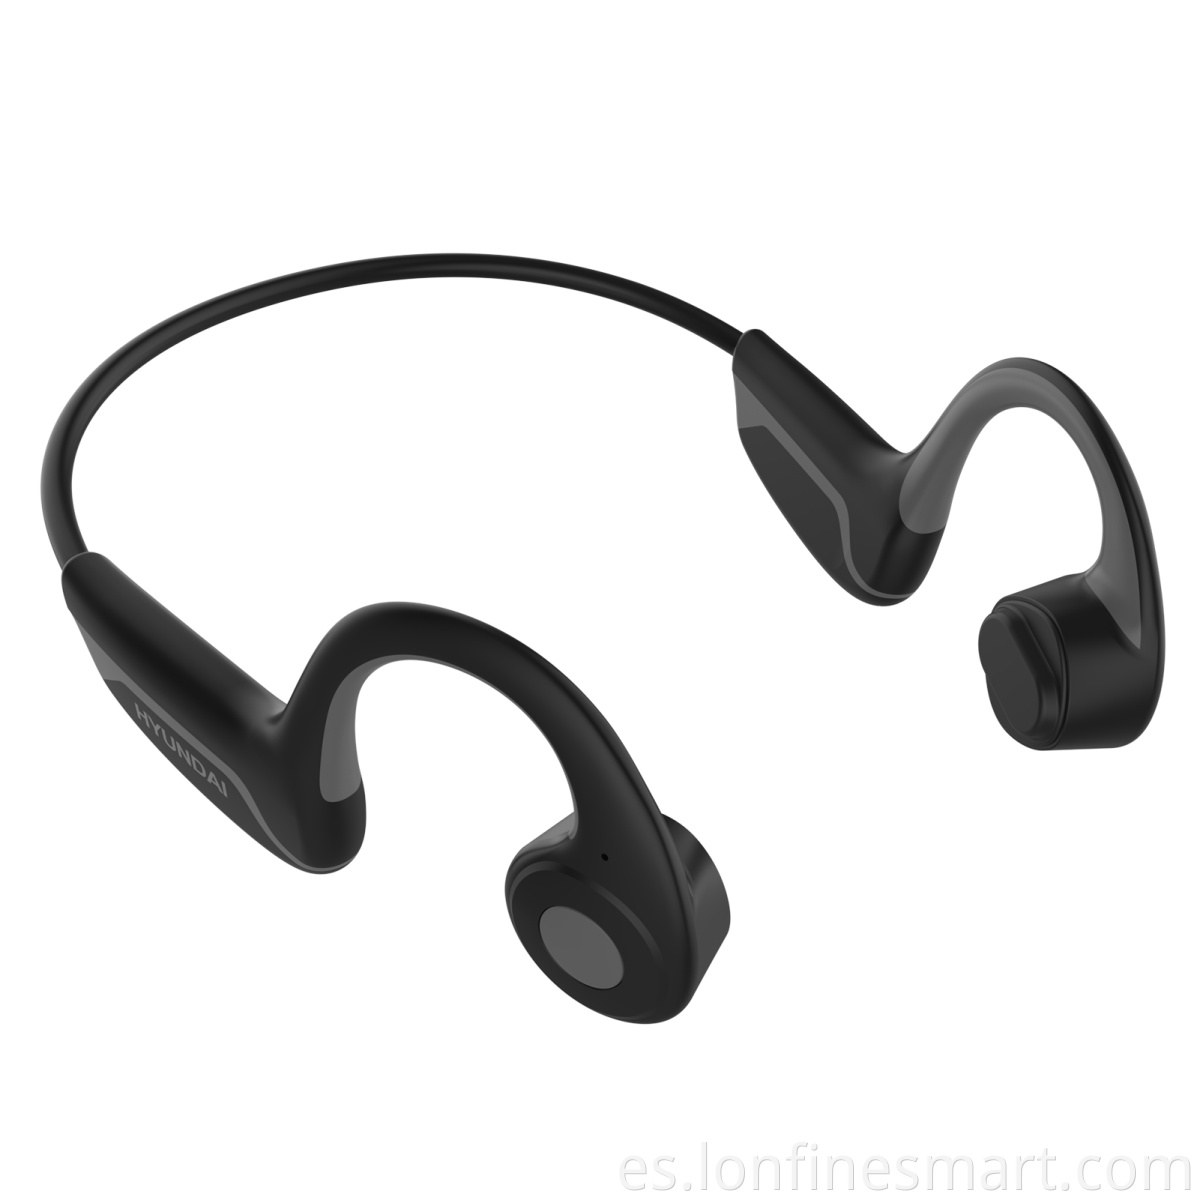 Waterproof Ear-Hook Bluetooth Headphones